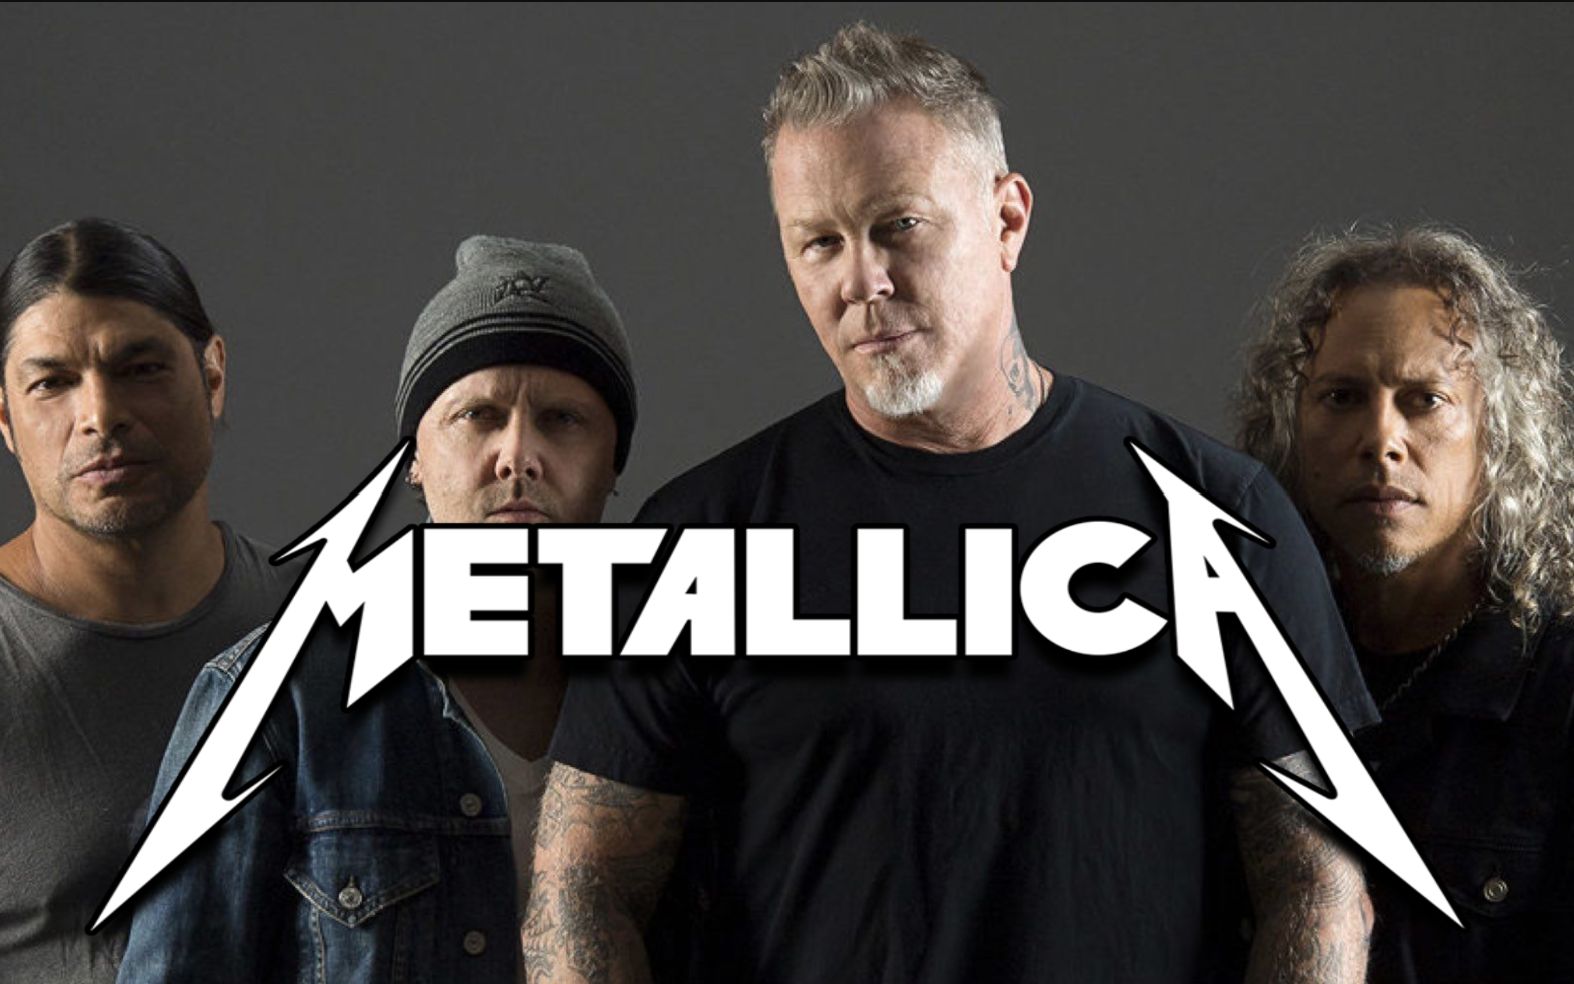 Metallica乐队桌面壁纸-576 - 摇滚壁纸网